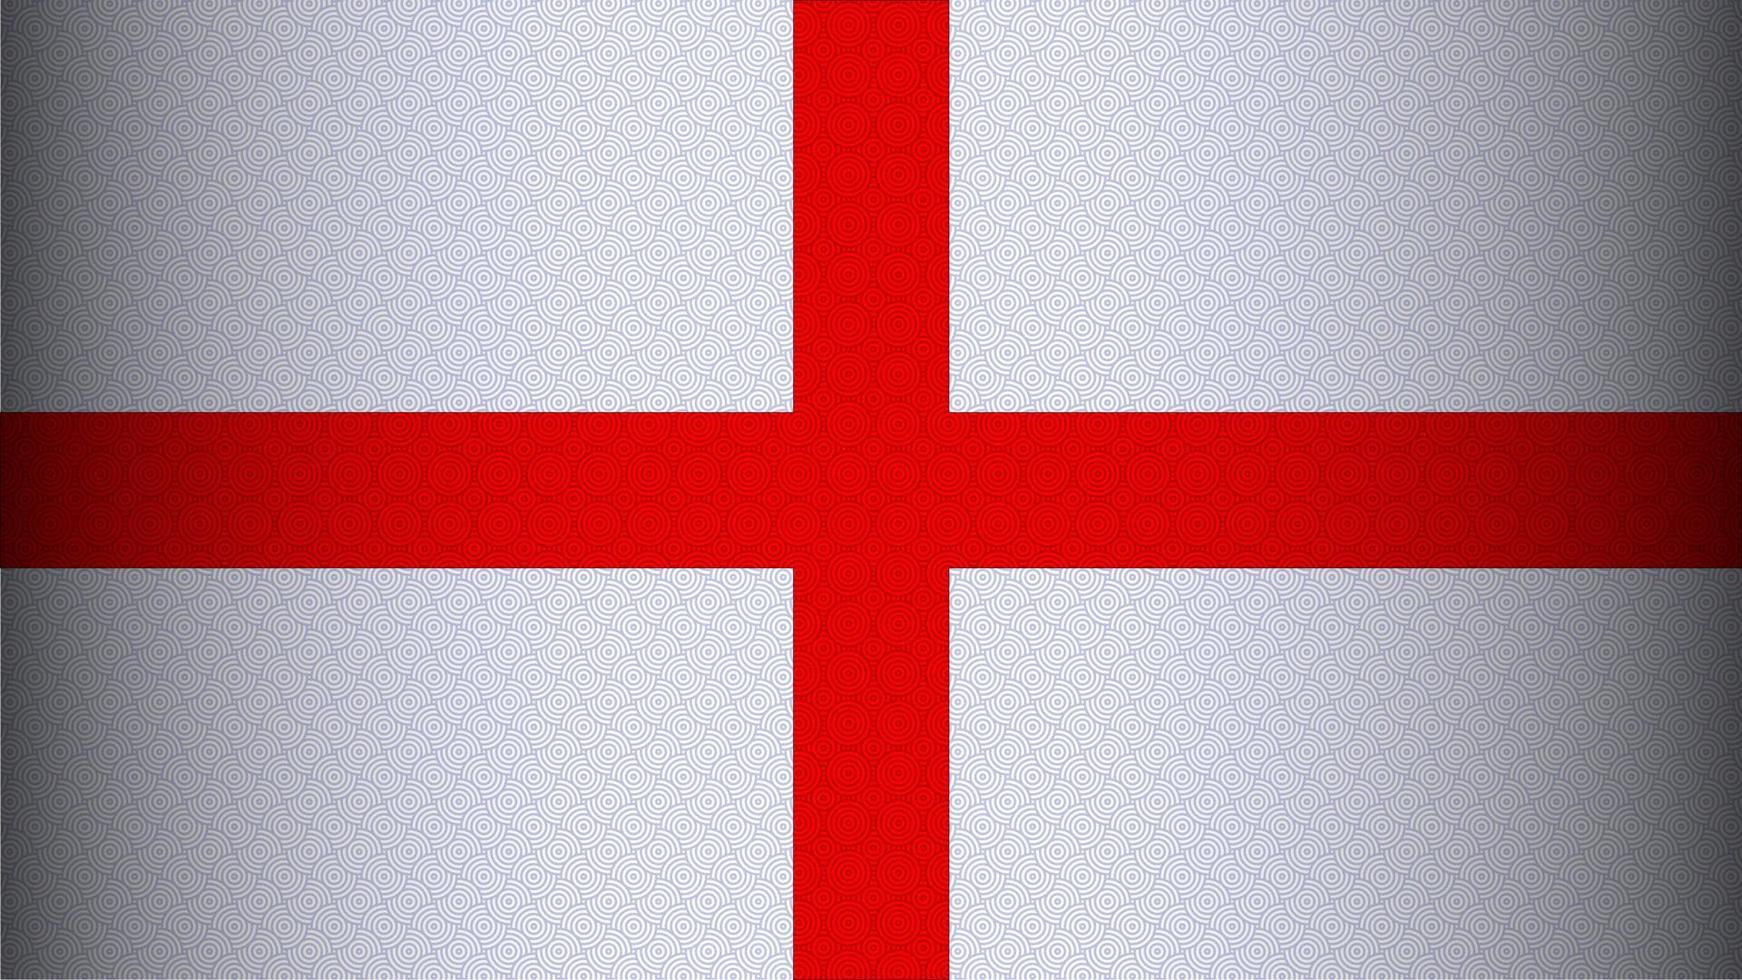 de nationale vlag van engeland. het Sint-Joriskruis. nationale vlagbehang met golfpatroon en schaduwgradiëntstijl. vector